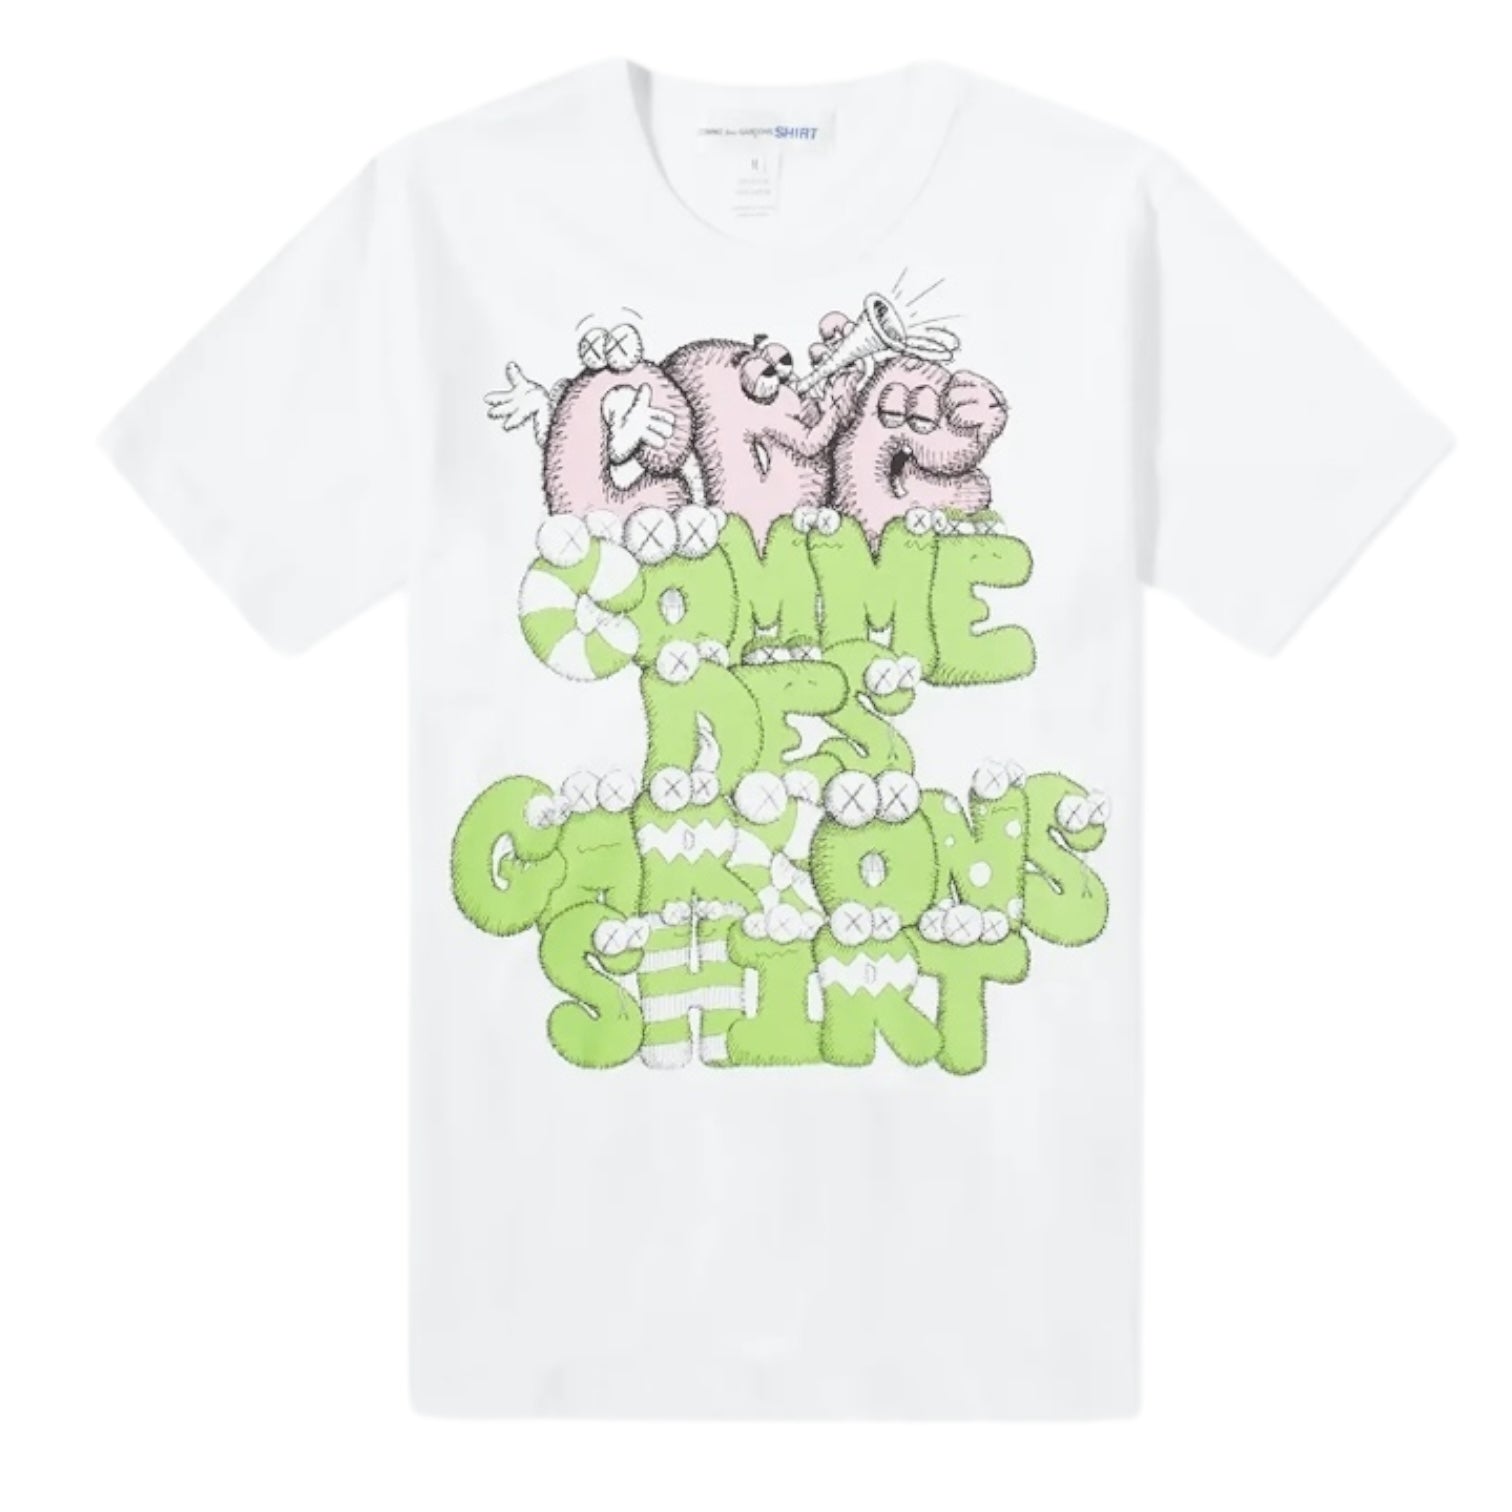 Comme Des Garçons SHIRT x Kaws Shirt - White/Green/Pink